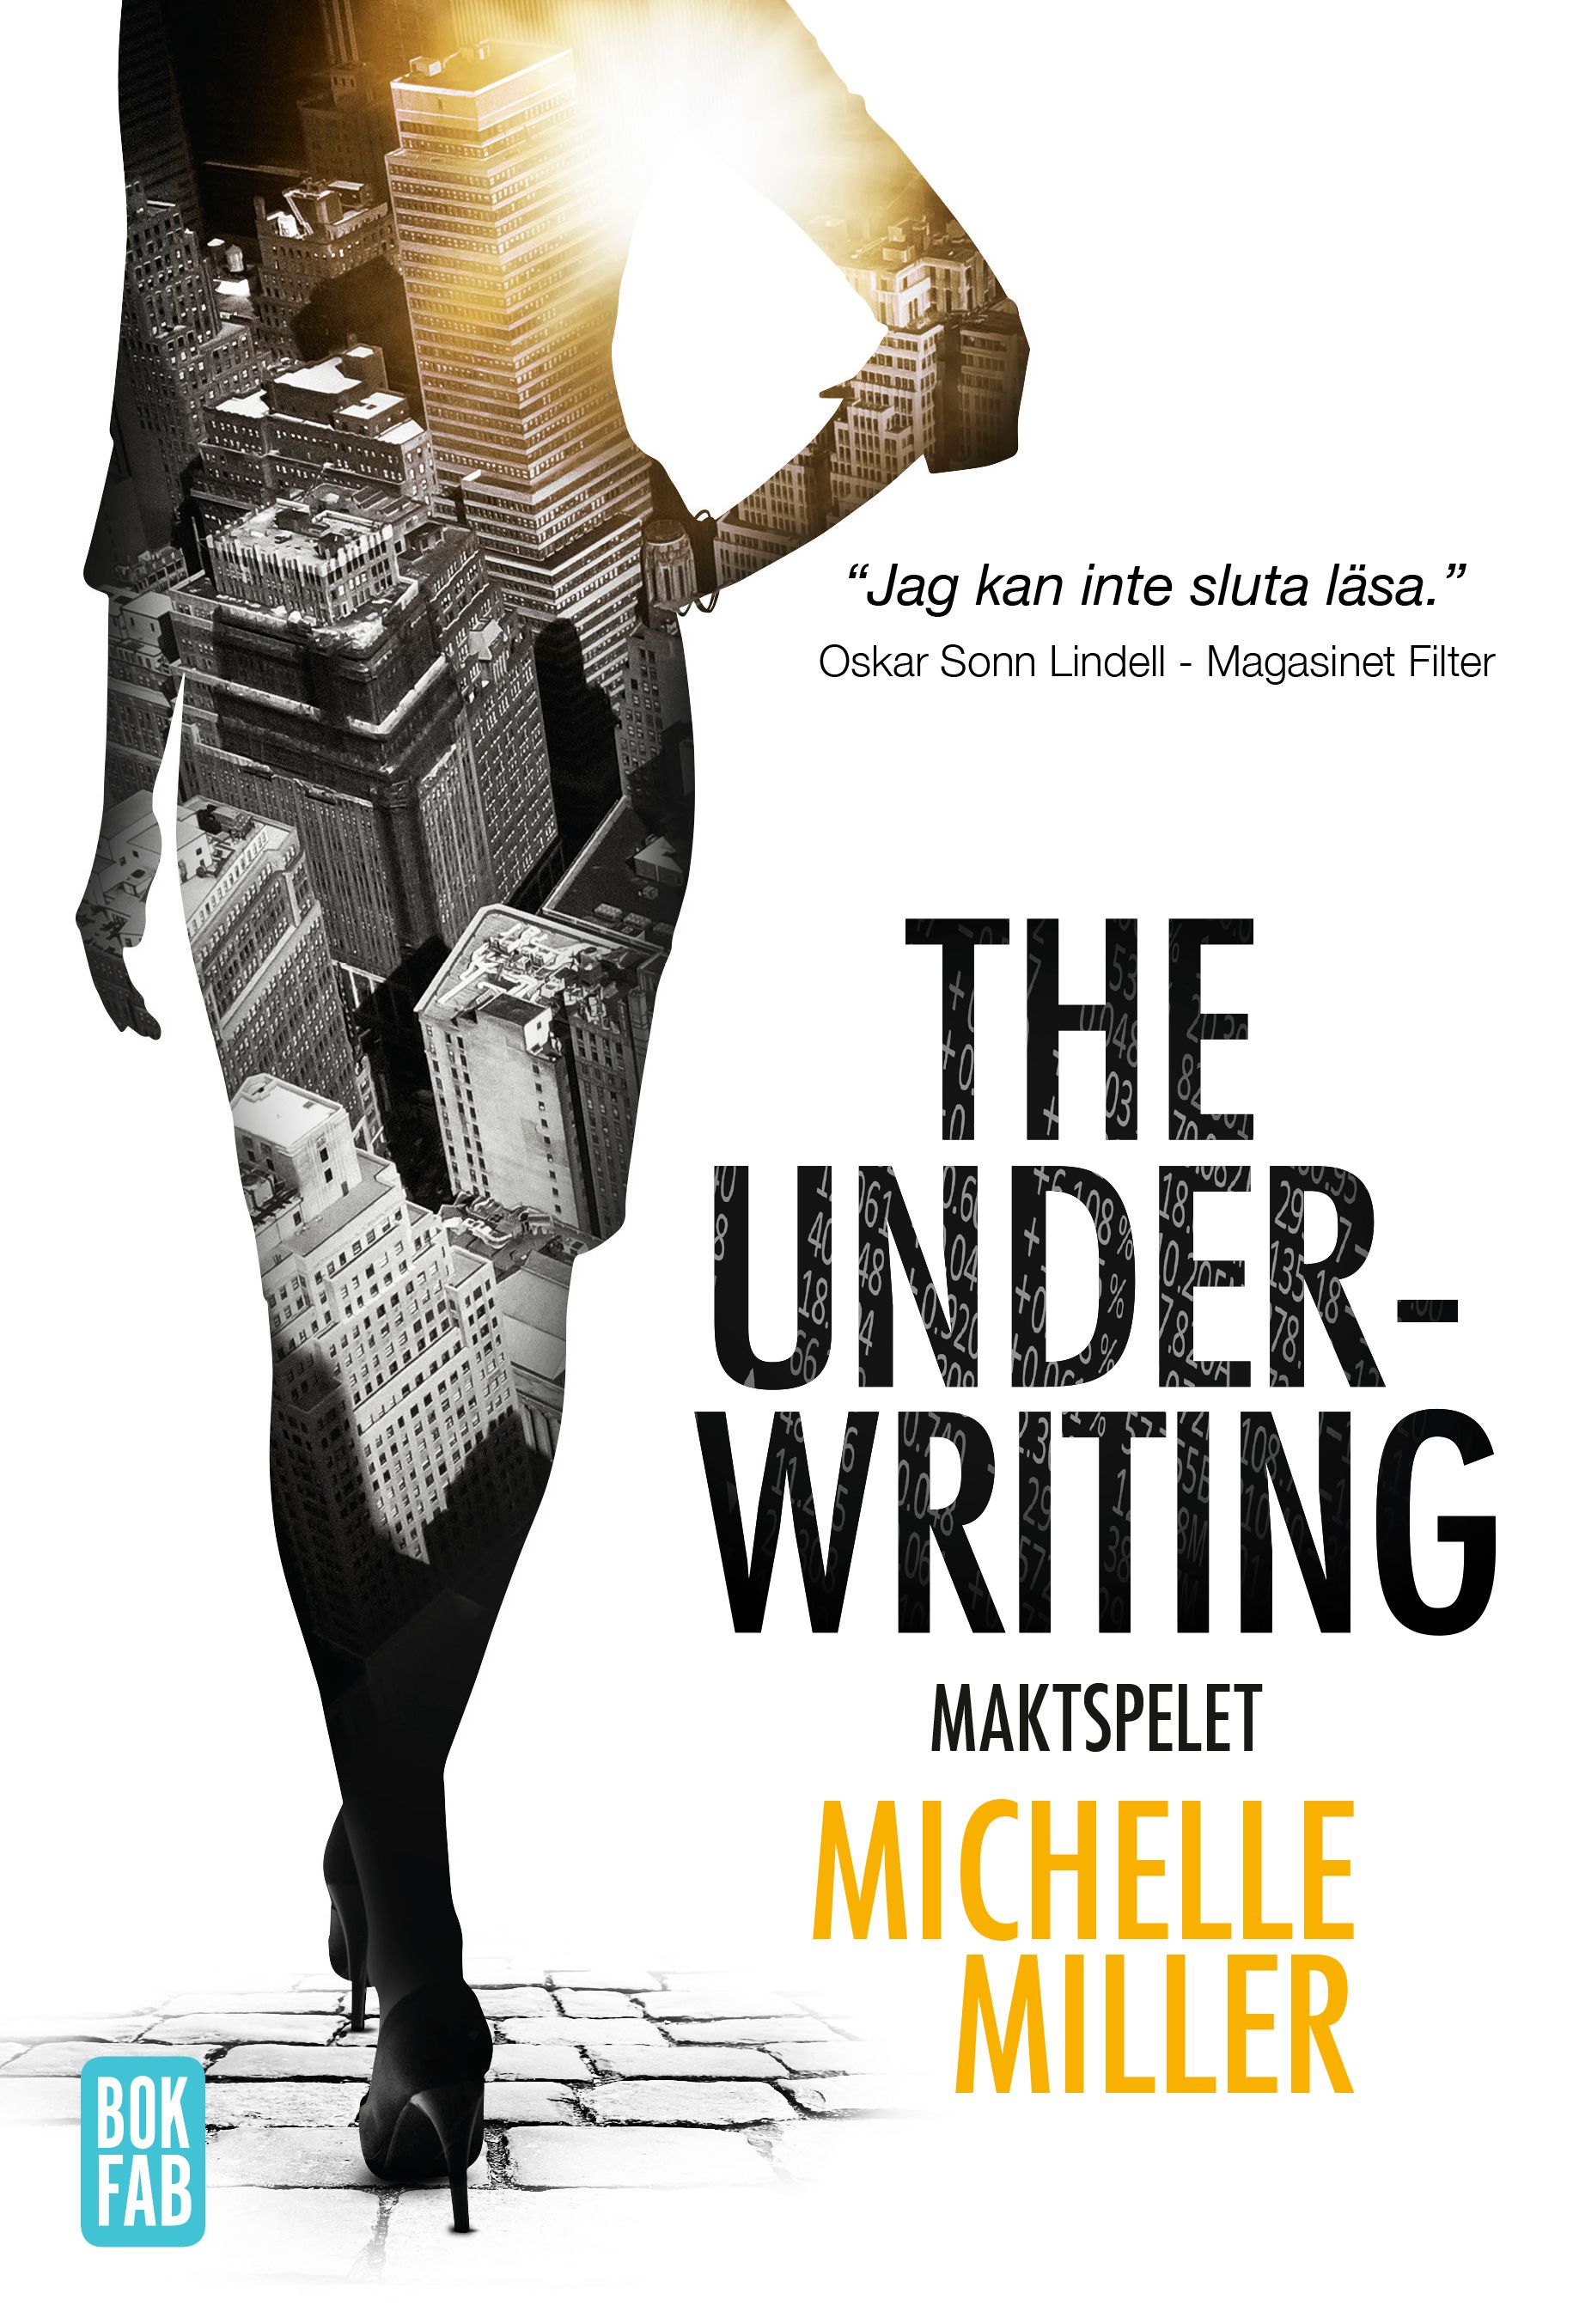 The Underwriting : Maktspelet, e-bok av Michelle Miller